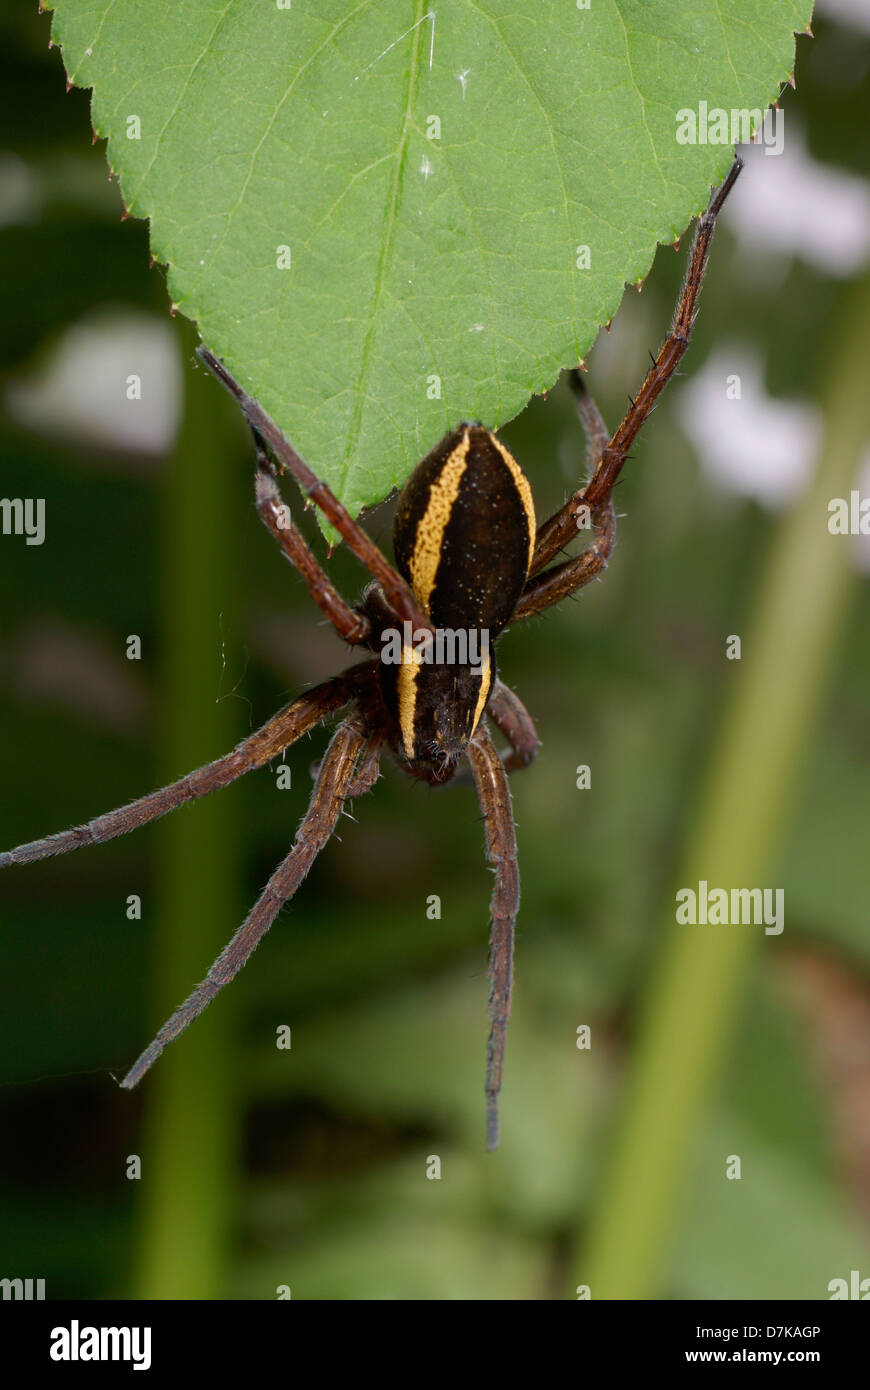 Grosse araignée effrayante sur la feuille verte Banque D'Images